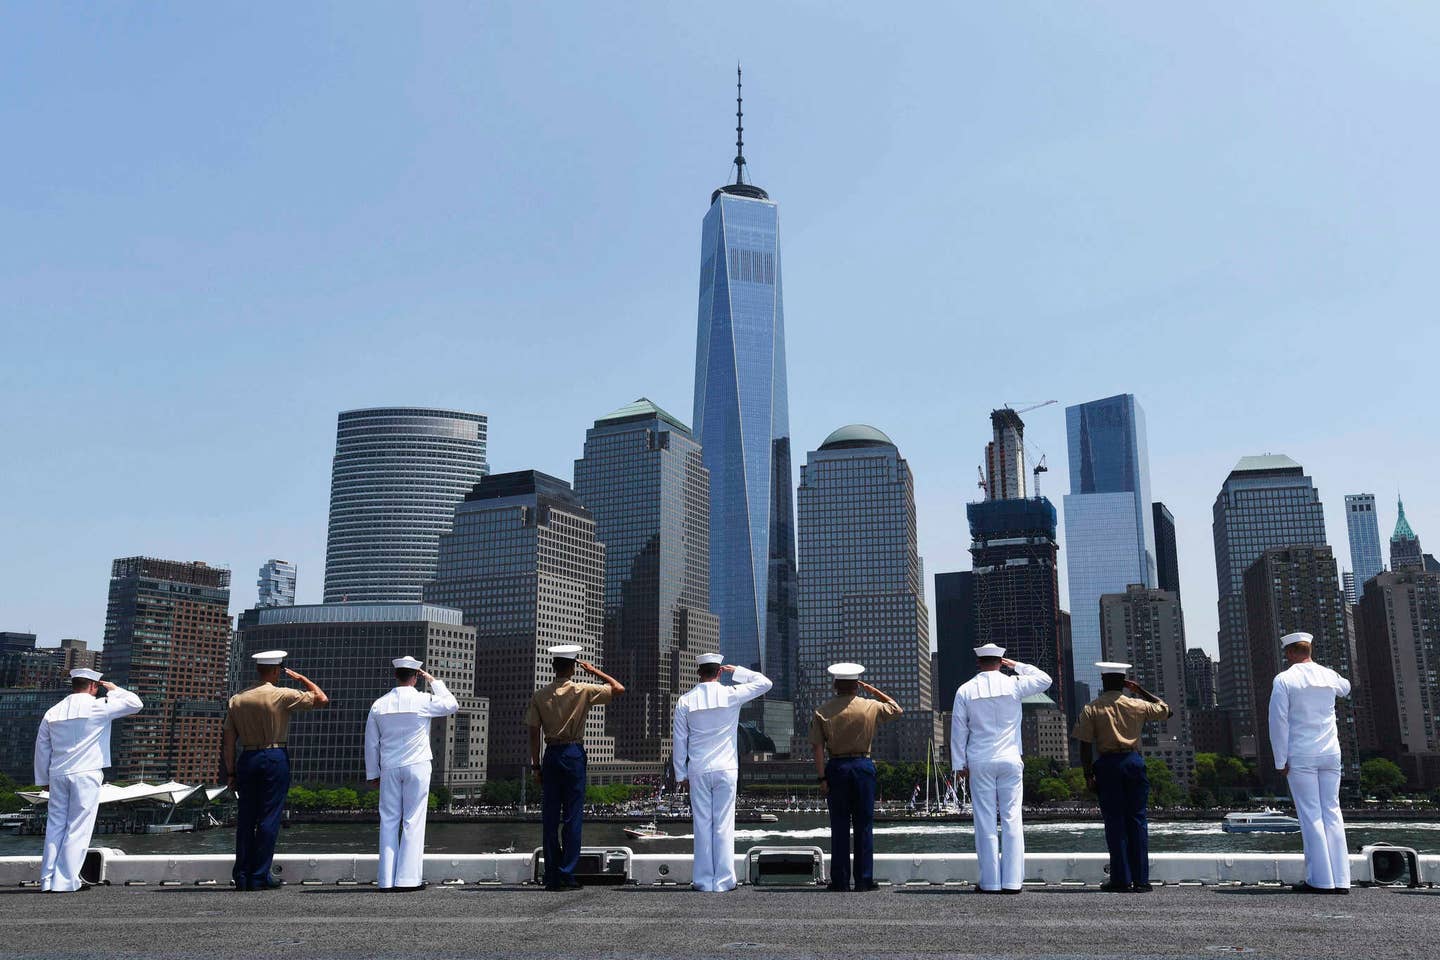 U.S. Navy photo by Mass Communication Specialist 1st Class Julie Matyascik